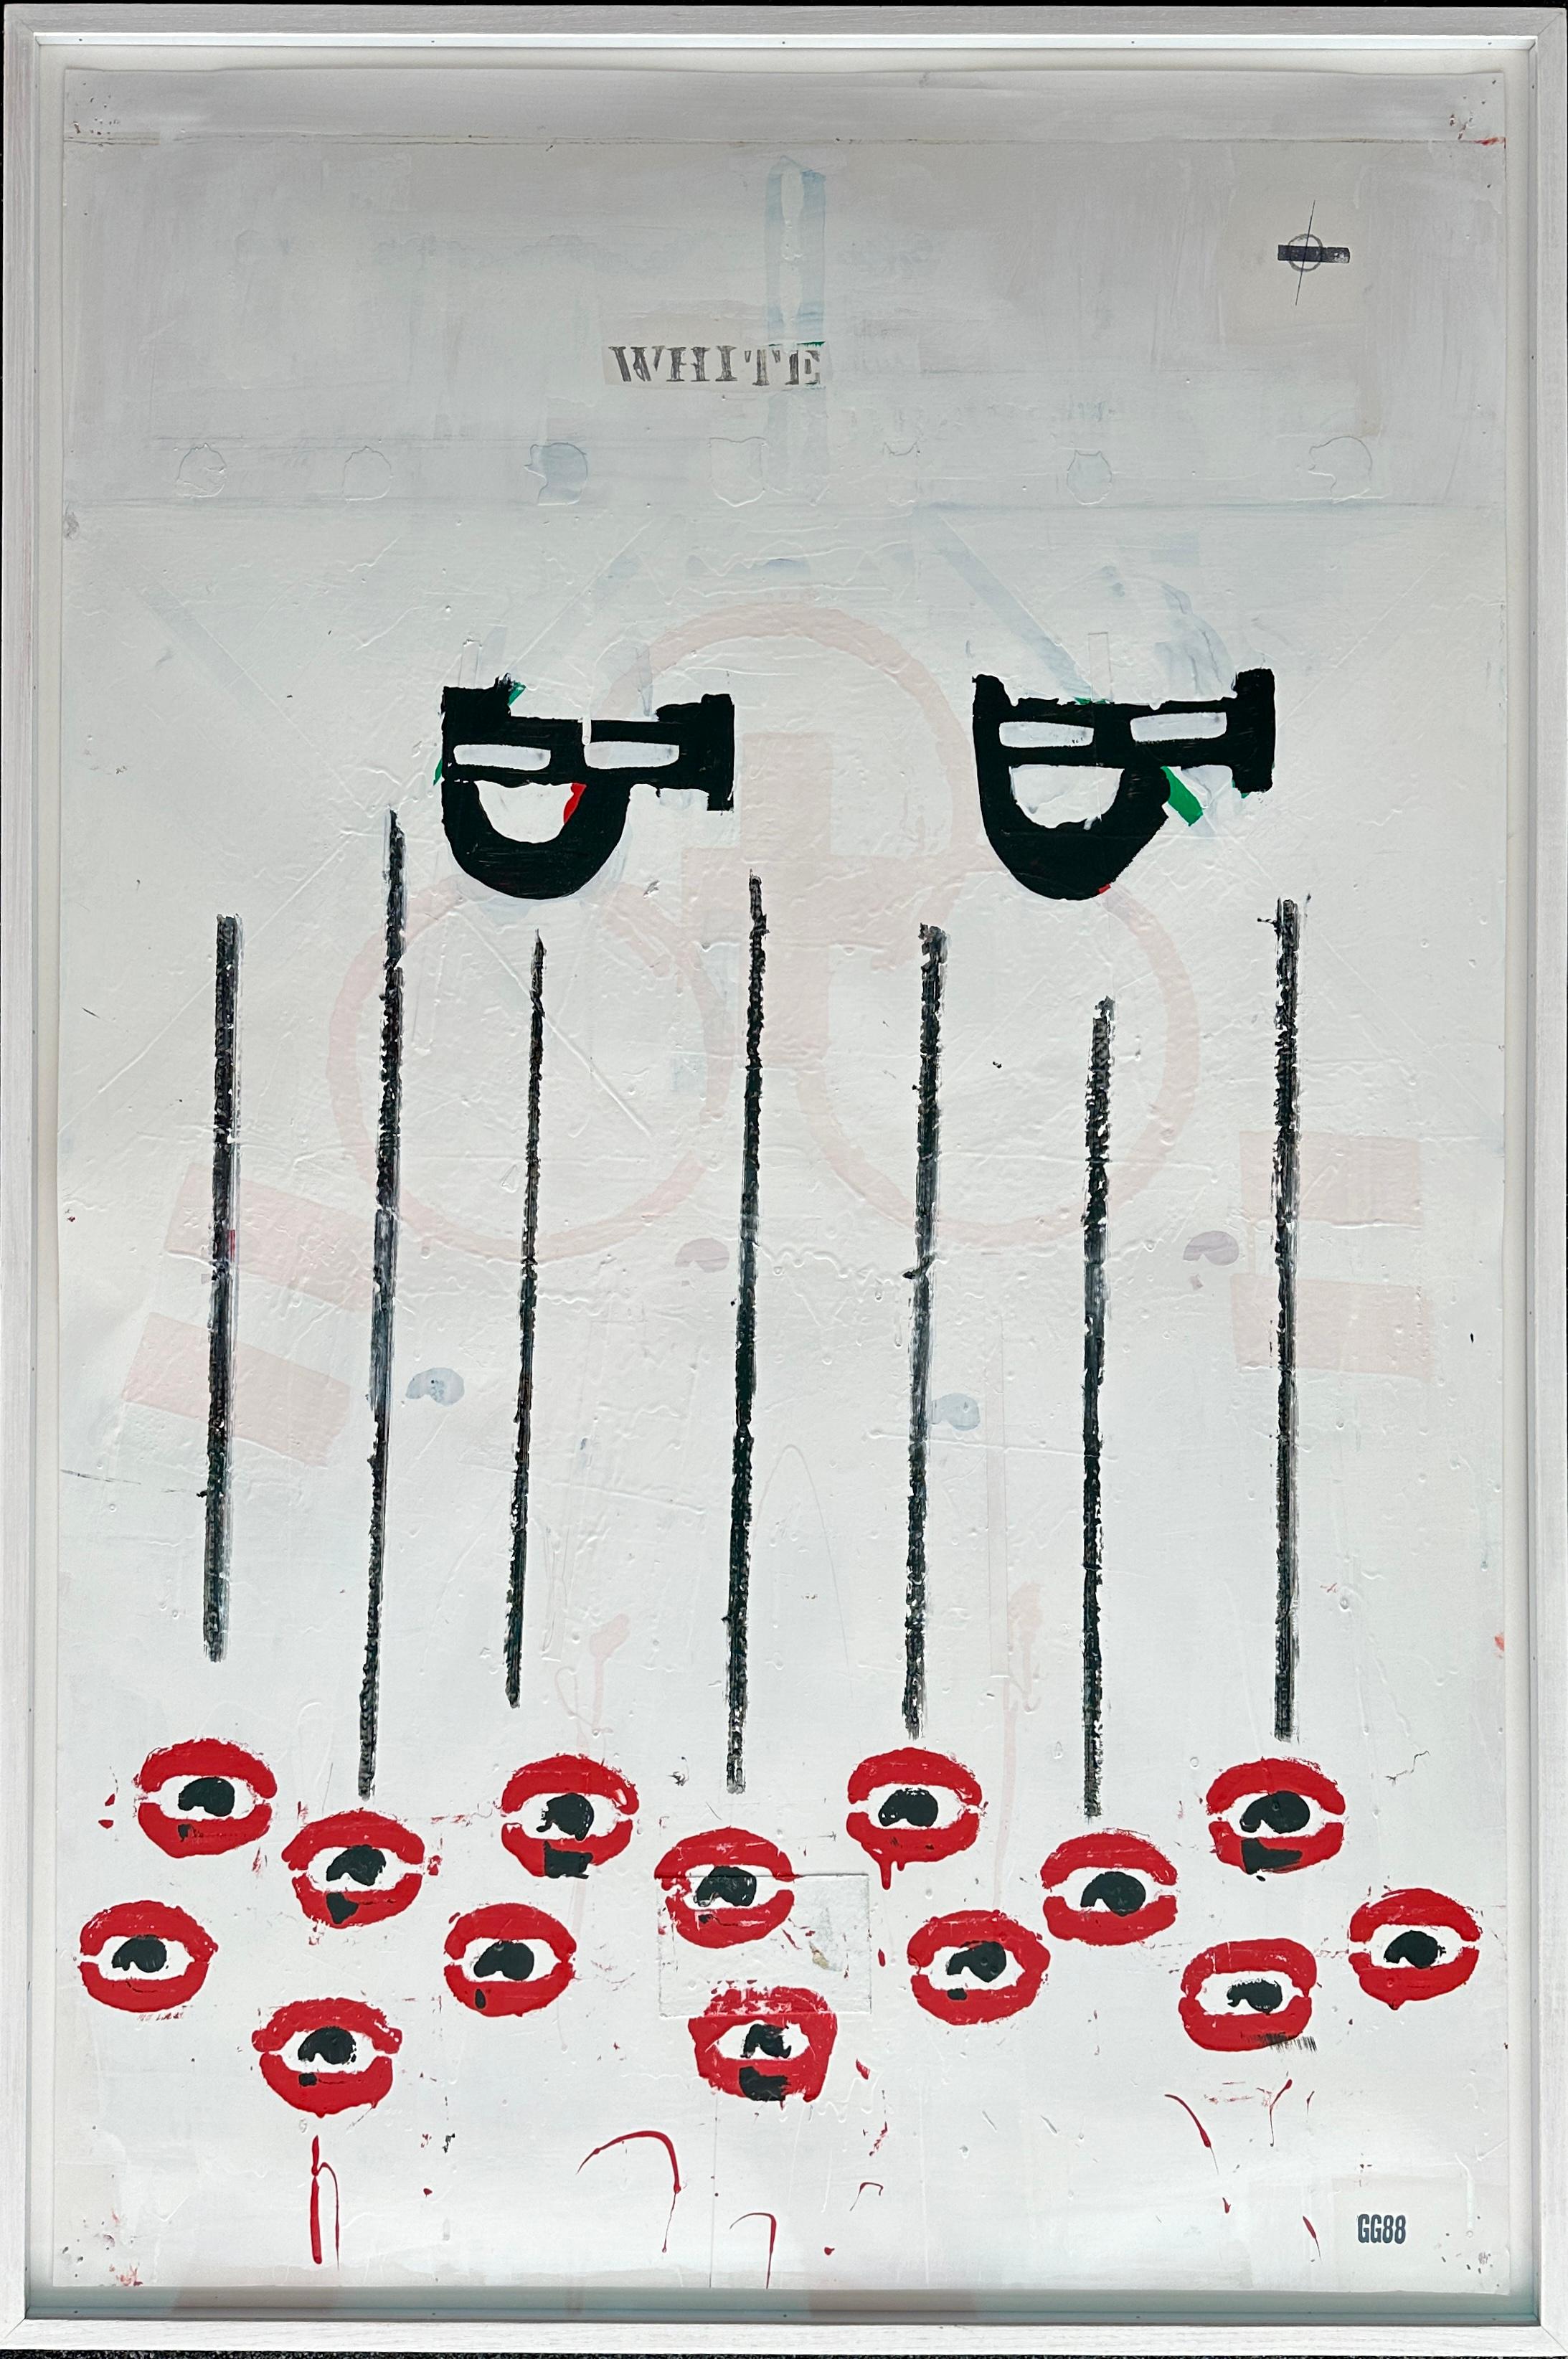 O.P. 88 (1988)
Crayon, encre, émail et collage sur papier
46" x 30" 
48 ½" x 32 ½" x 2" encadré
Estampillé "GG88" en bas à droite par l'artiste avec son cachet de signature.

Provenance : M. One & Company, New York, NY (étiquette au verso).
Barbara